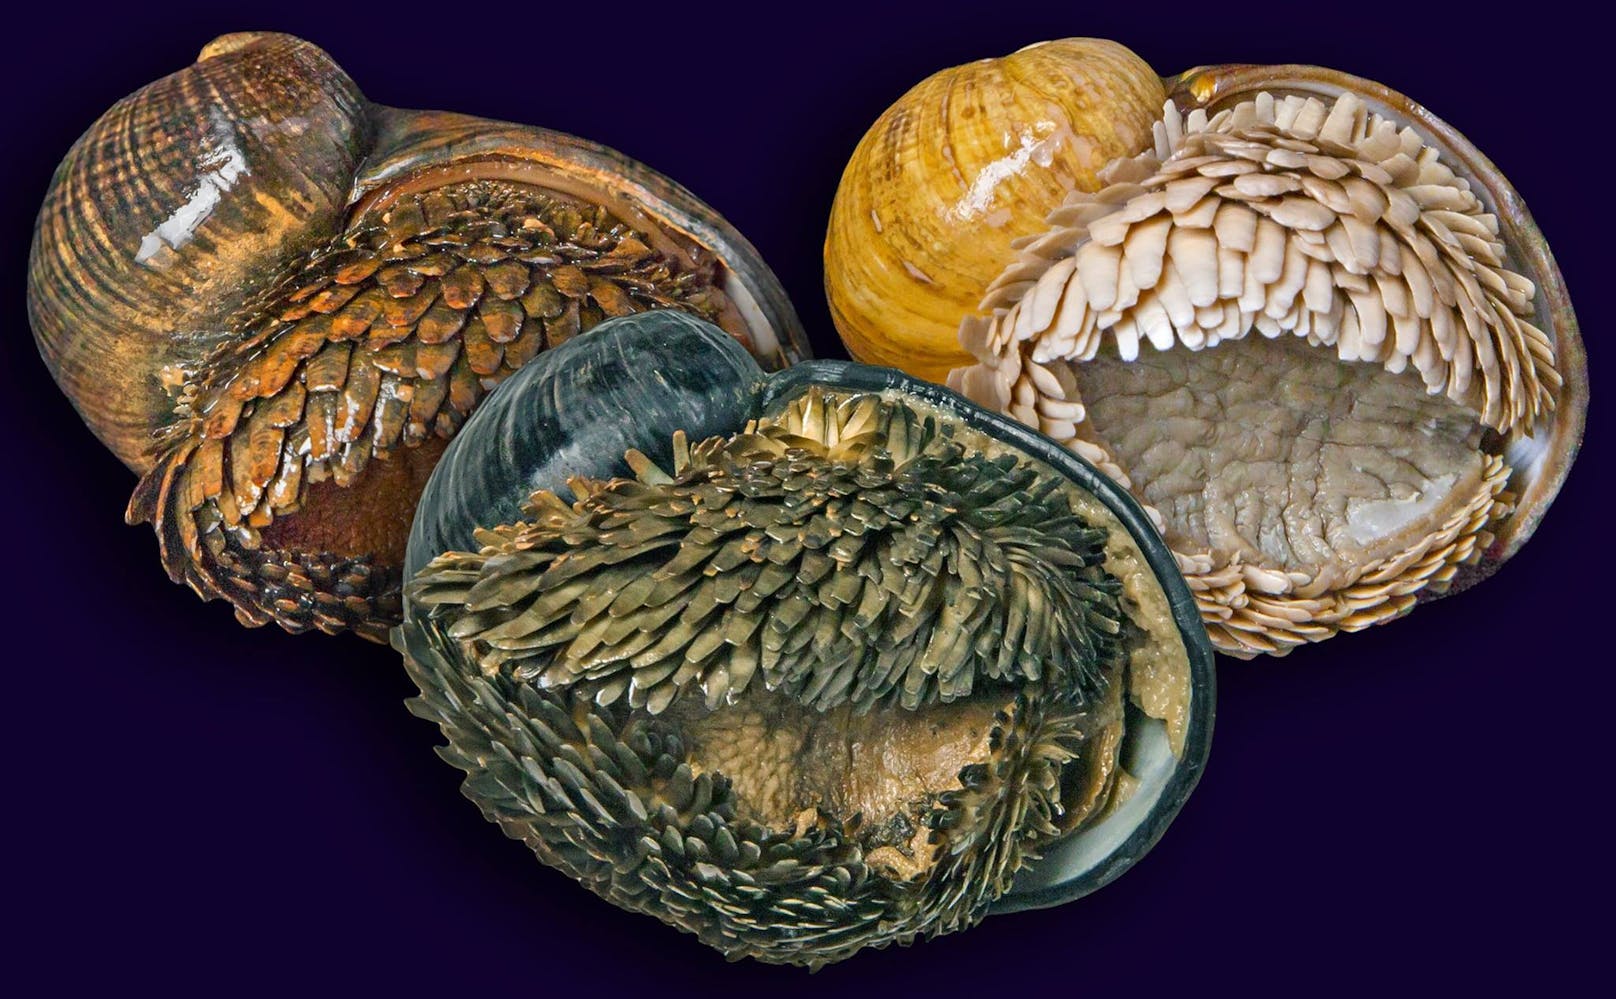 Das Aussehen der Schuppenfußschnecken (Chrysomallon squamiferum) unterscheidet sich zwischen den bekannten Fundorten stark.